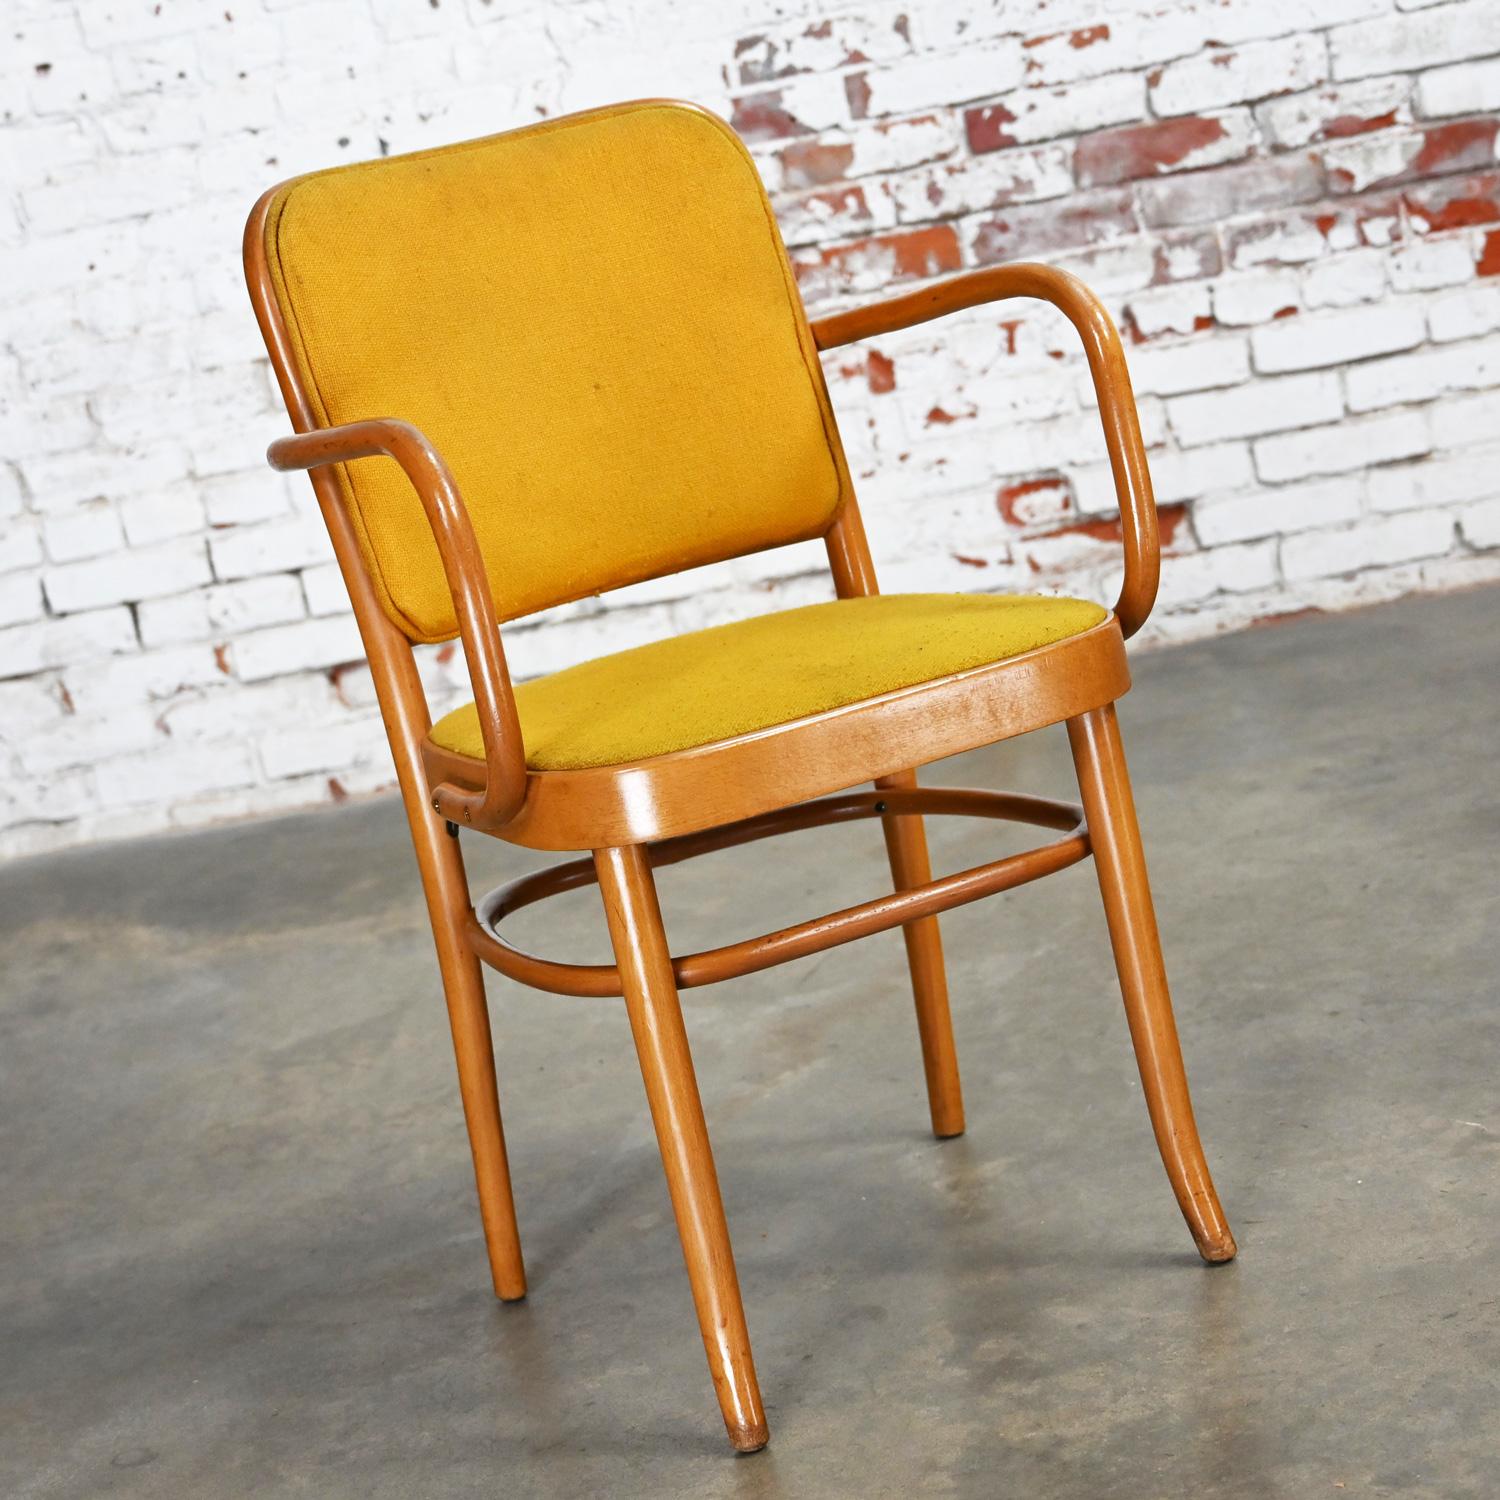 Merveilleuses chaises de salle à manger en bois courbé Beehaus en hêtre Thonet Josef Hoffman Prague 811 style armé par Falcon Products Inc. Nous en avons 33 et nous les vendons séparément. Byit, en gardant à l'esprit qu'il s'agit d'une pièce vintage